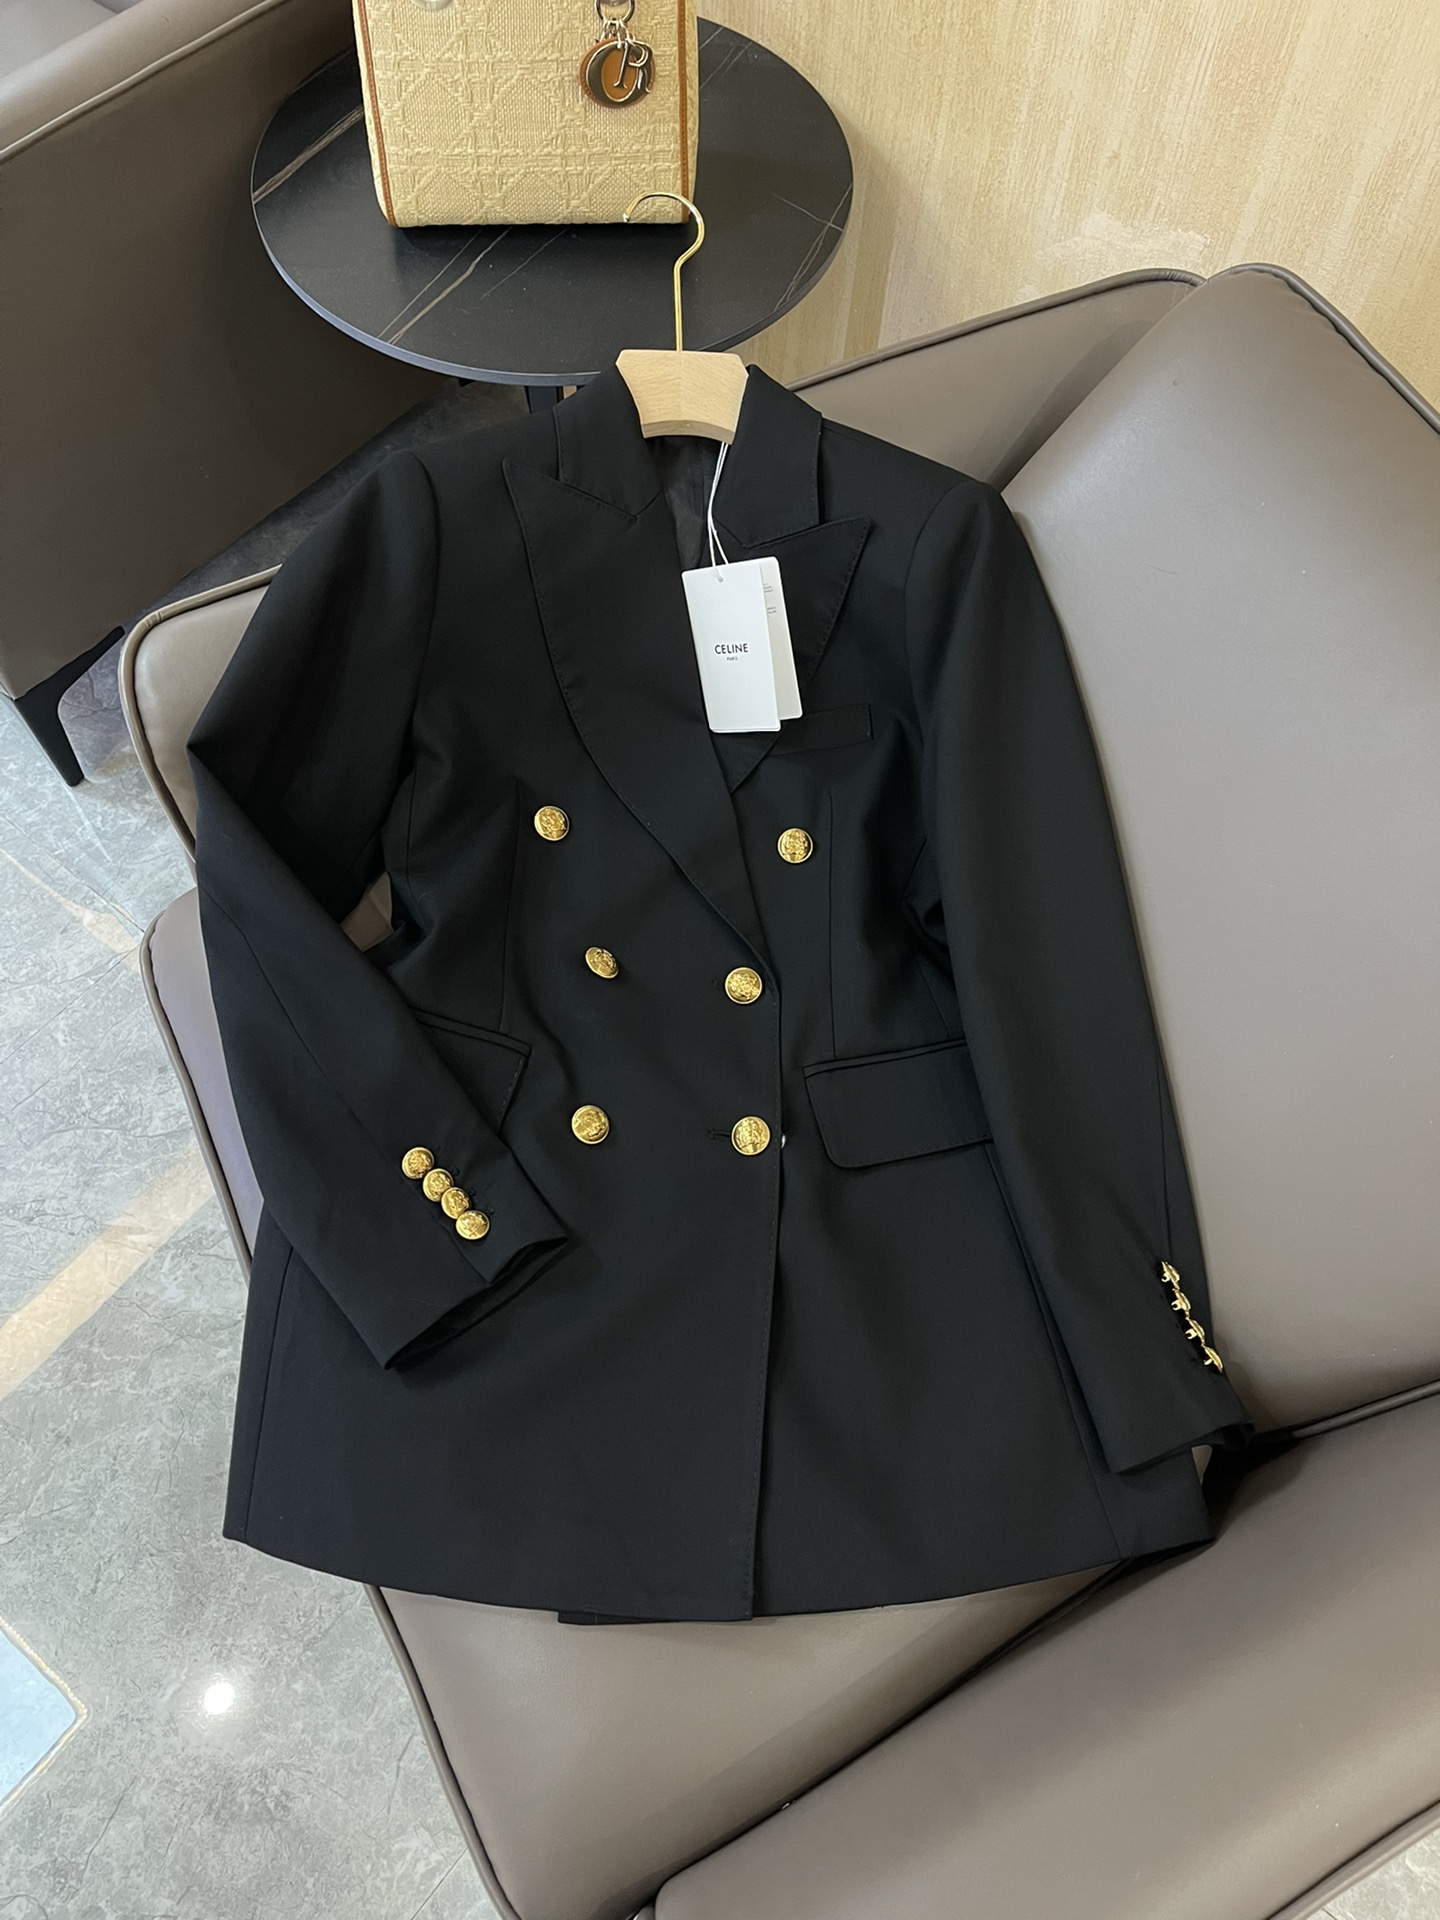 23684#新款西装外套celine专柜顶级货双排金扣西装外套黑色SMLXL